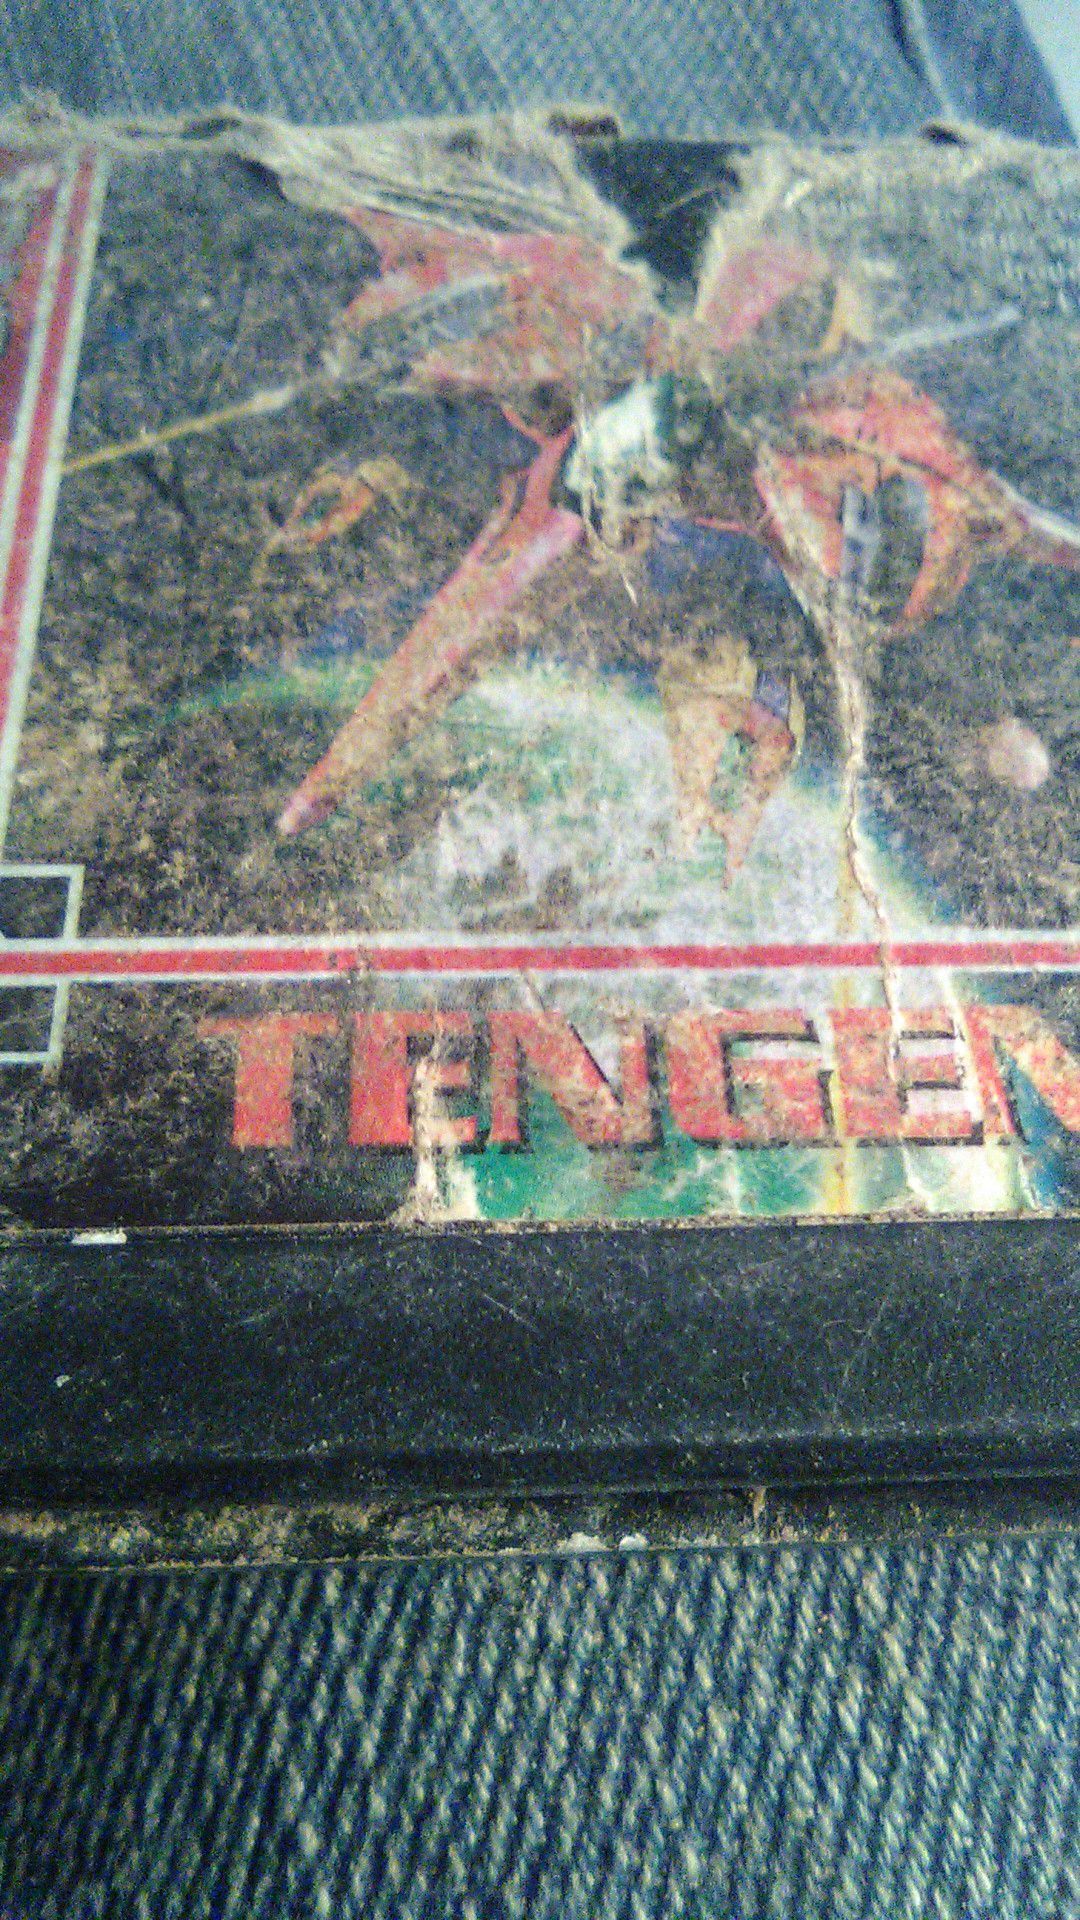 Sega Genesis Tengen game